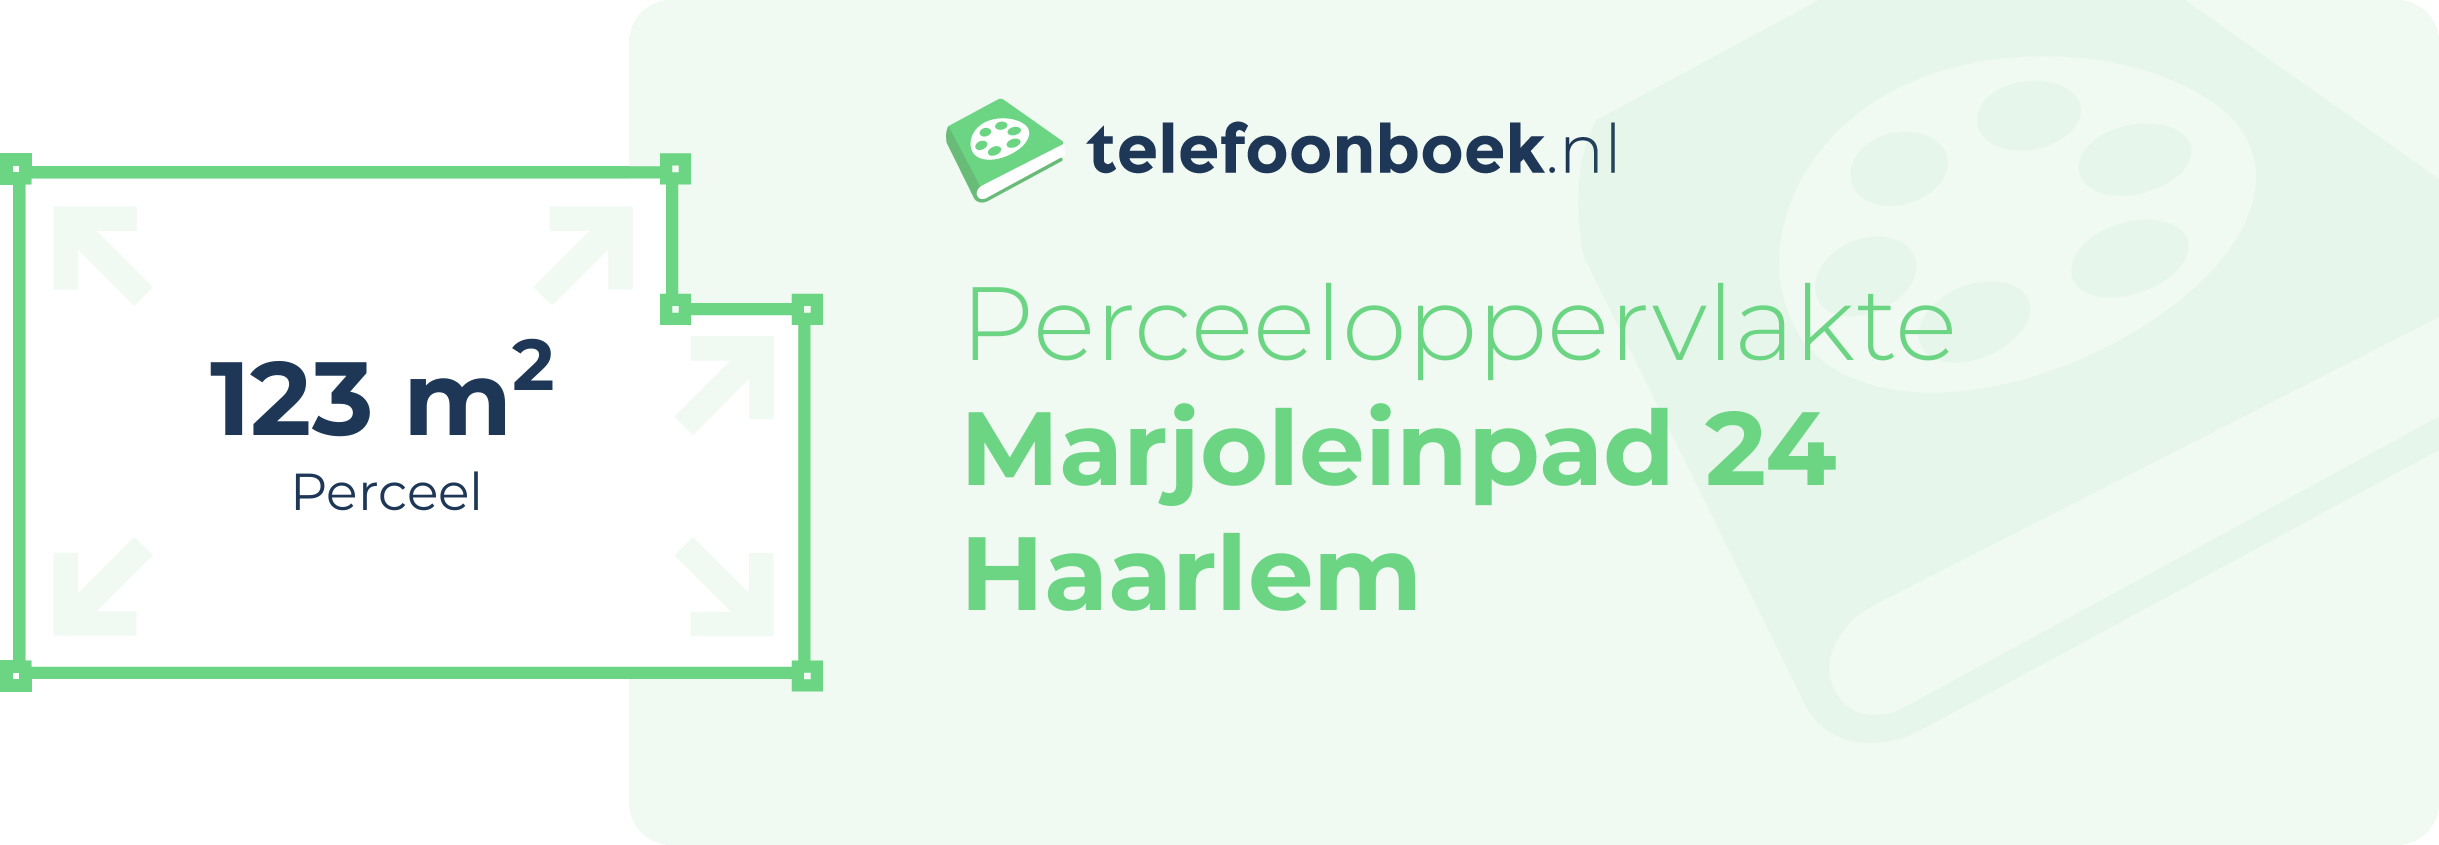 Perceeloppervlakte Marjoleinpad 24 Haarlem